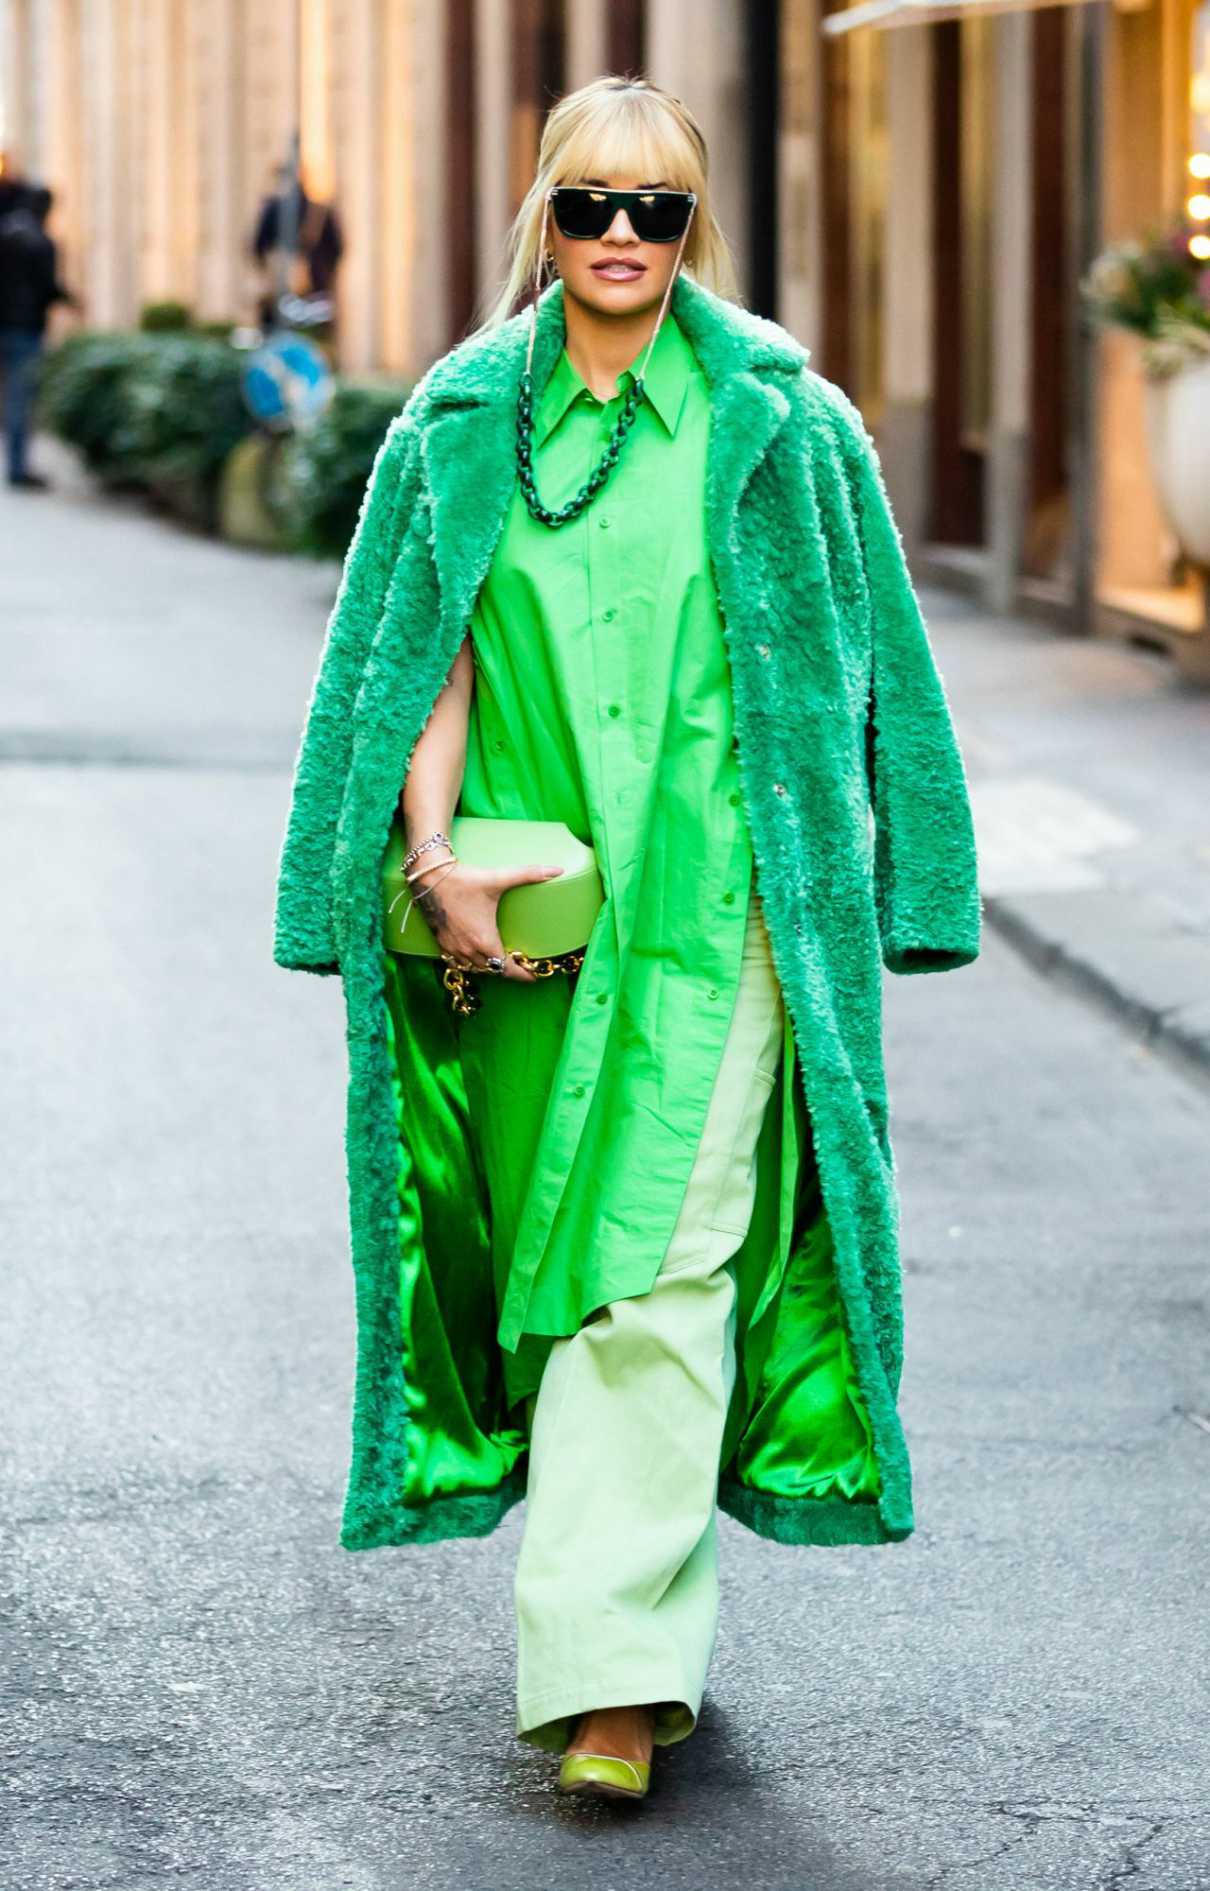 Rita Ora in a Green Outfit